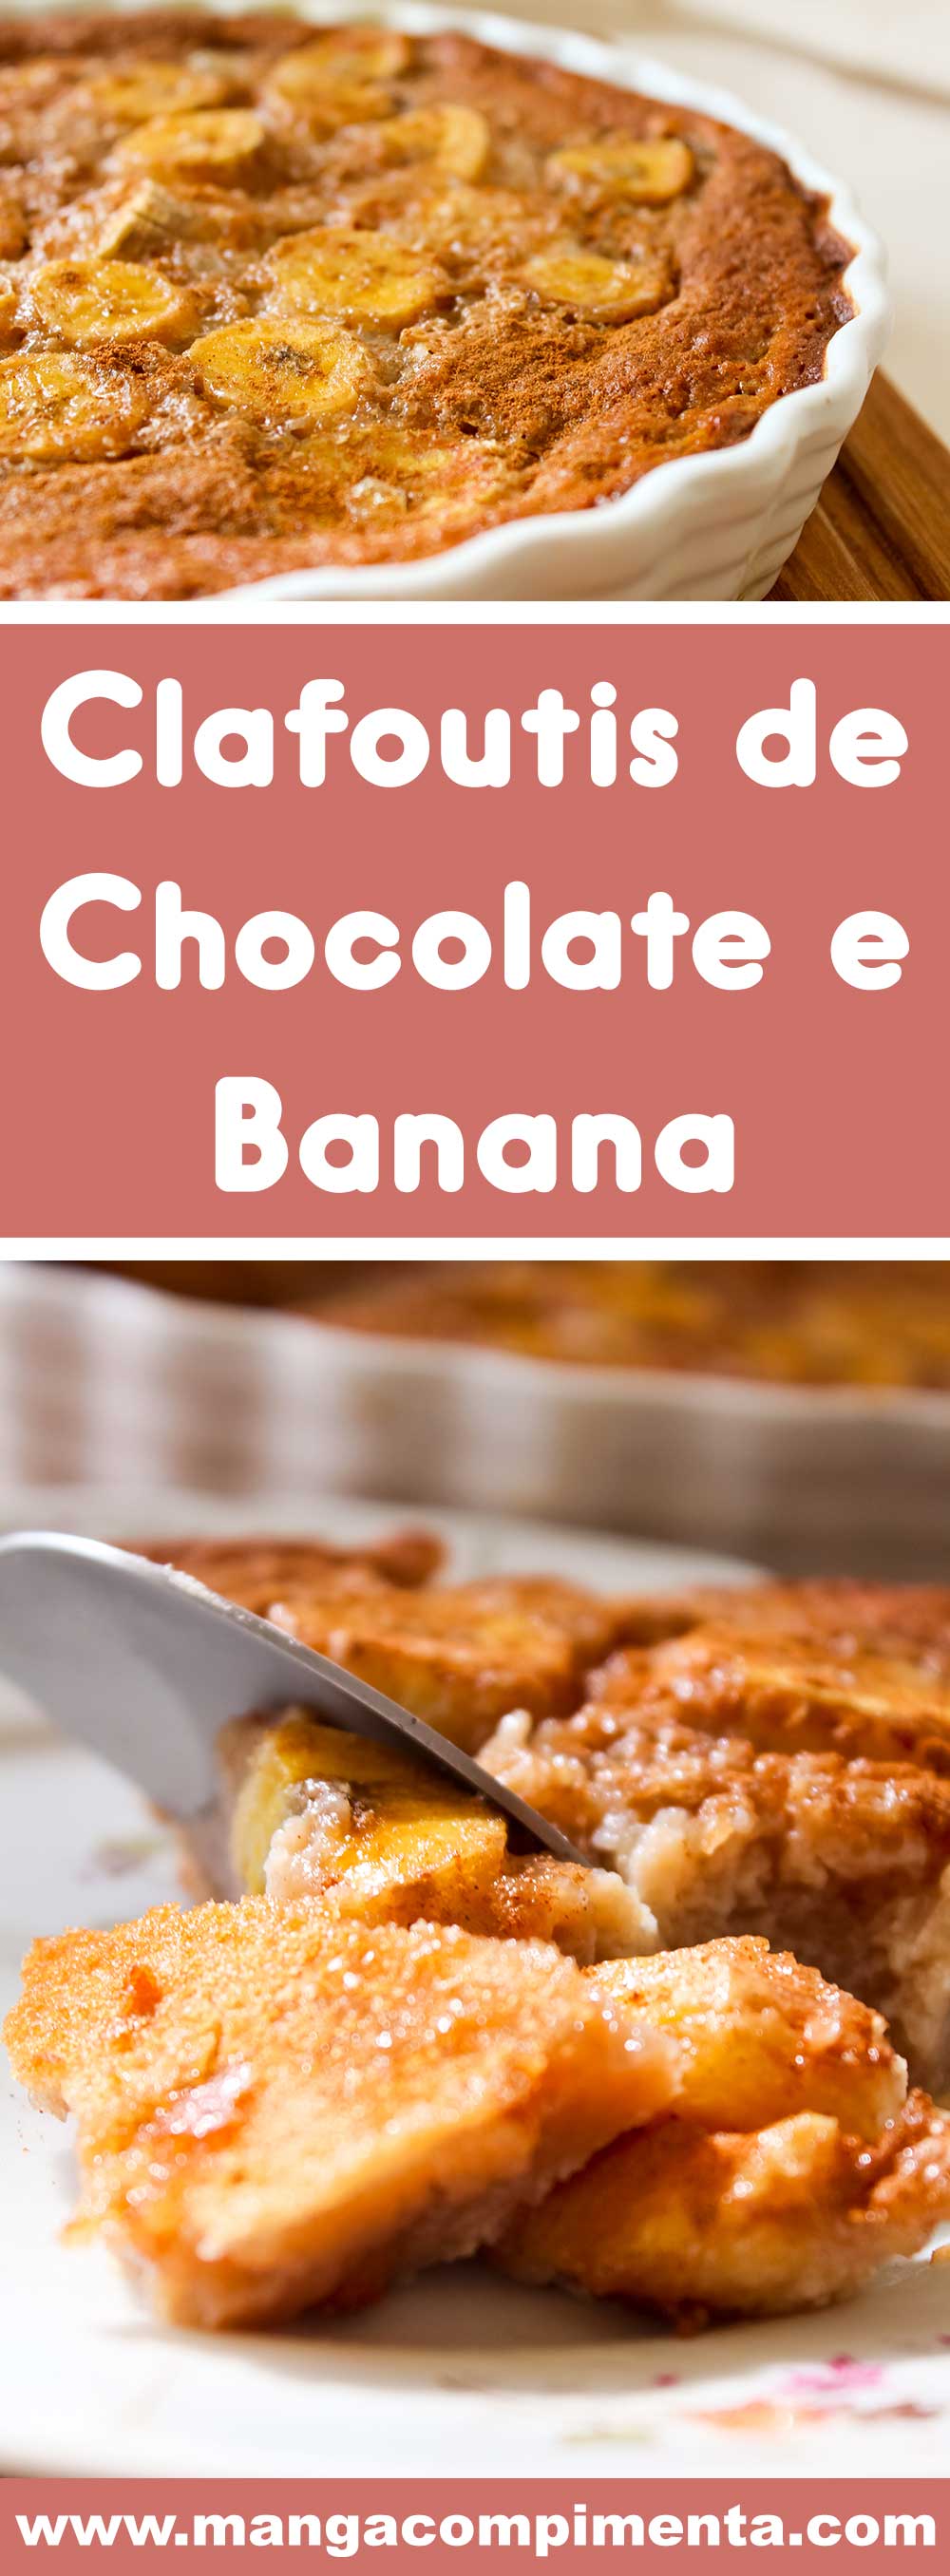 Receita de Clafoutis de Chocolate e Banana - uma delícia para o lanche da tarde com as pessoas que você mais ama!